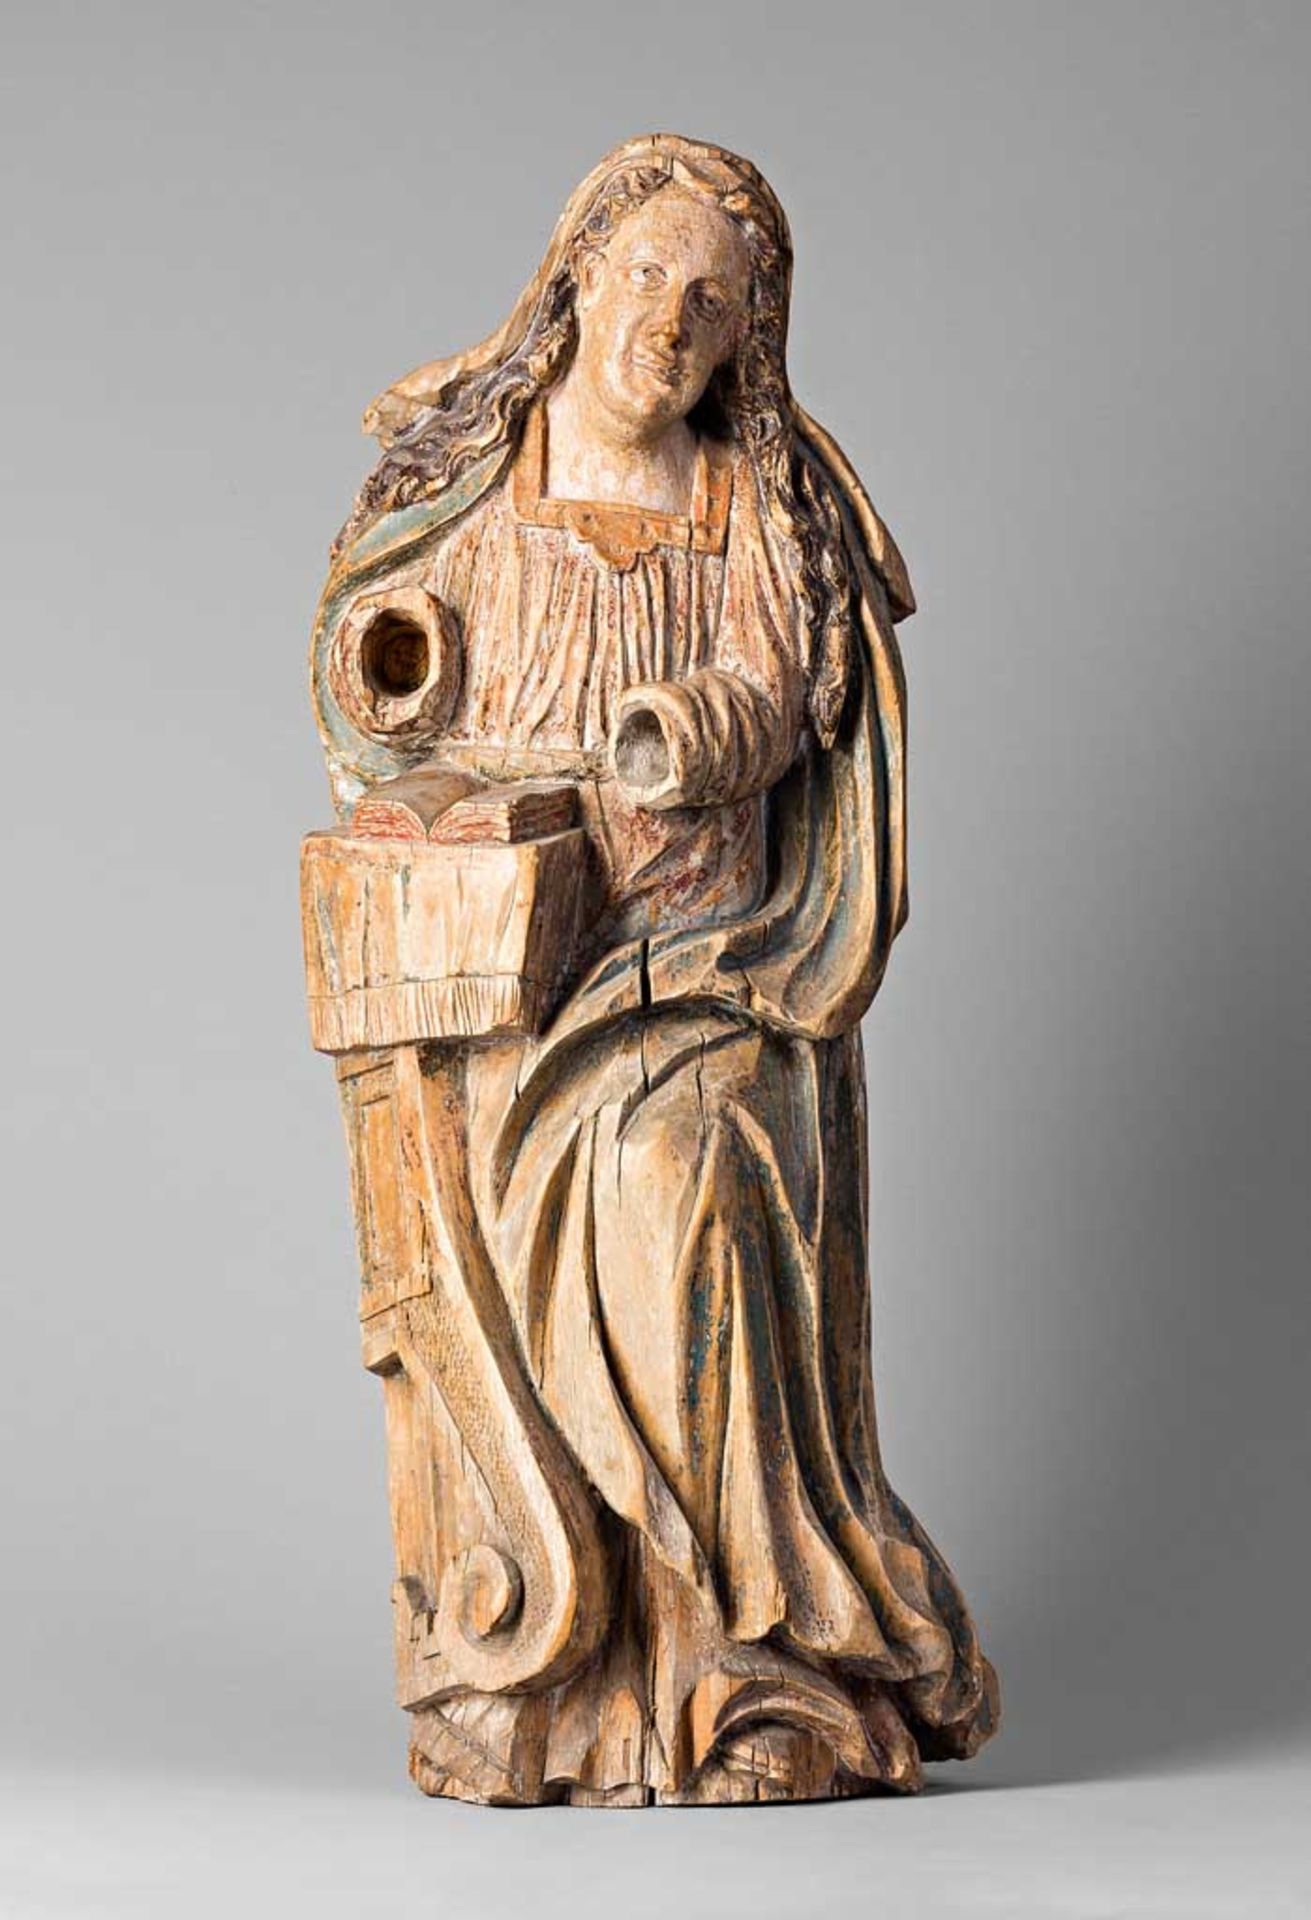 Heilige mit aufgeschlagener Bibel. Hände fehlen. Holz mit Resten von Fassung. Um 1700? H 70 cm